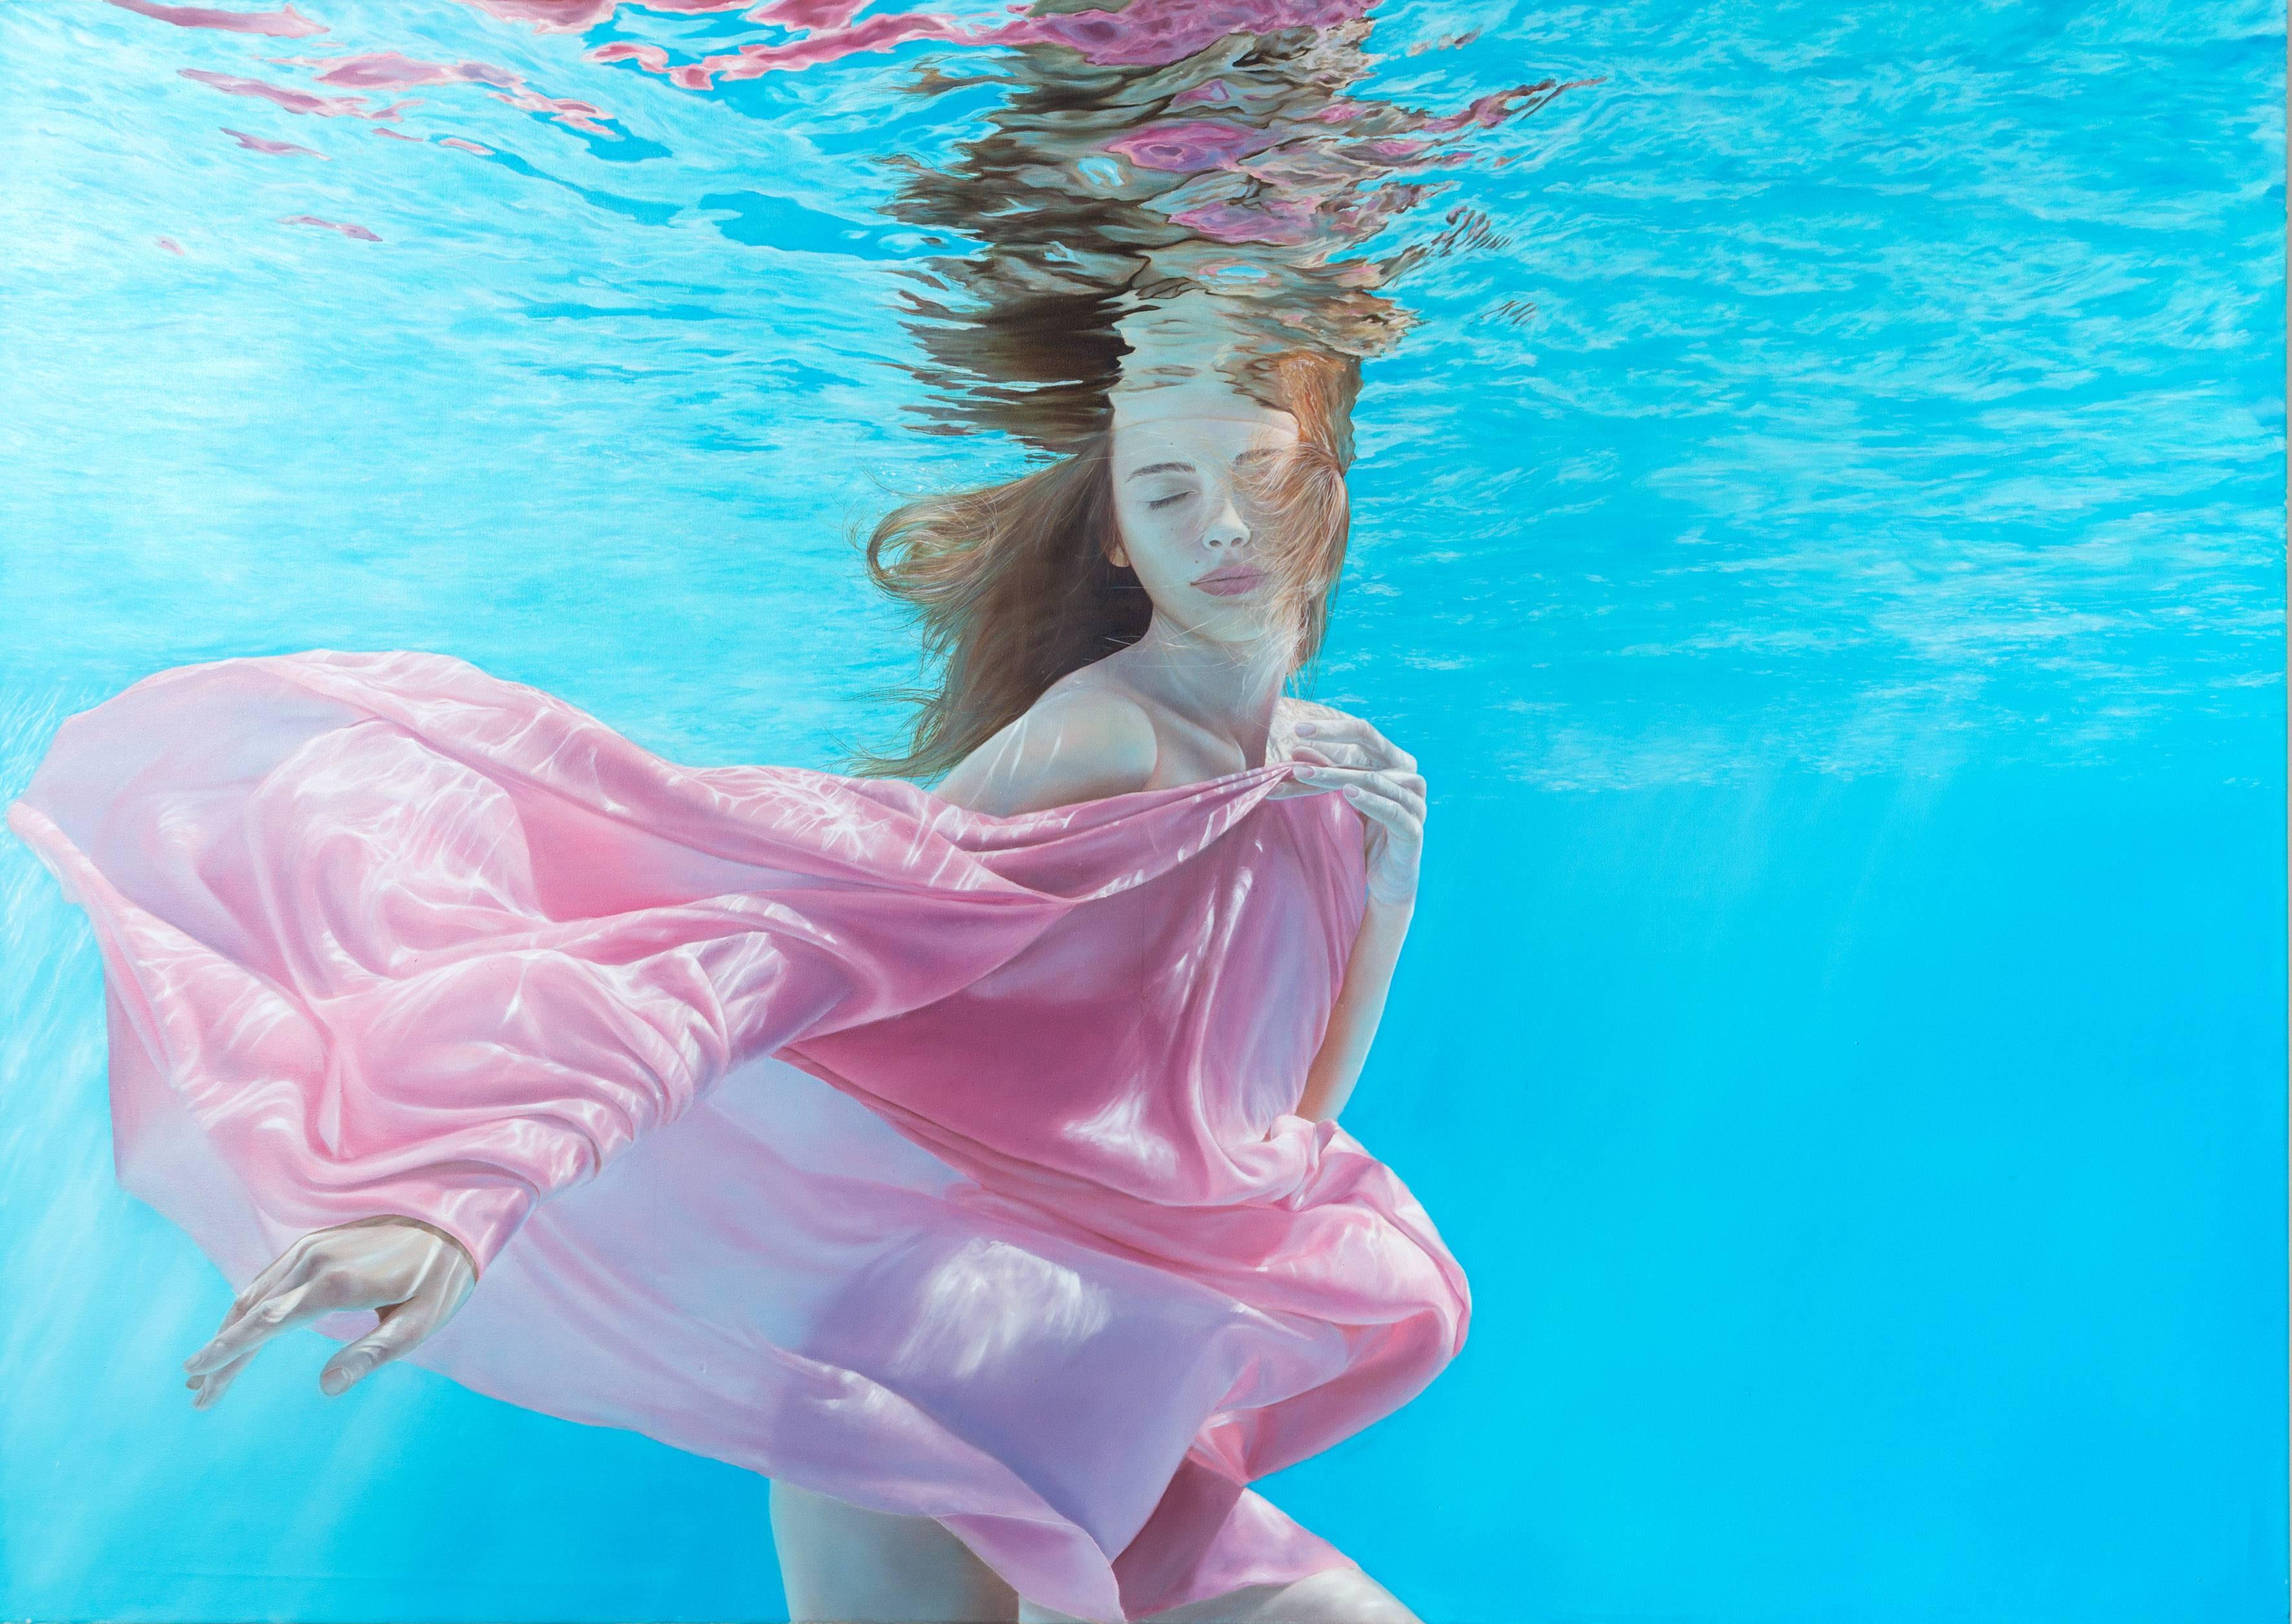 Sergey Piskunov Nude Painting - Girl In Pink